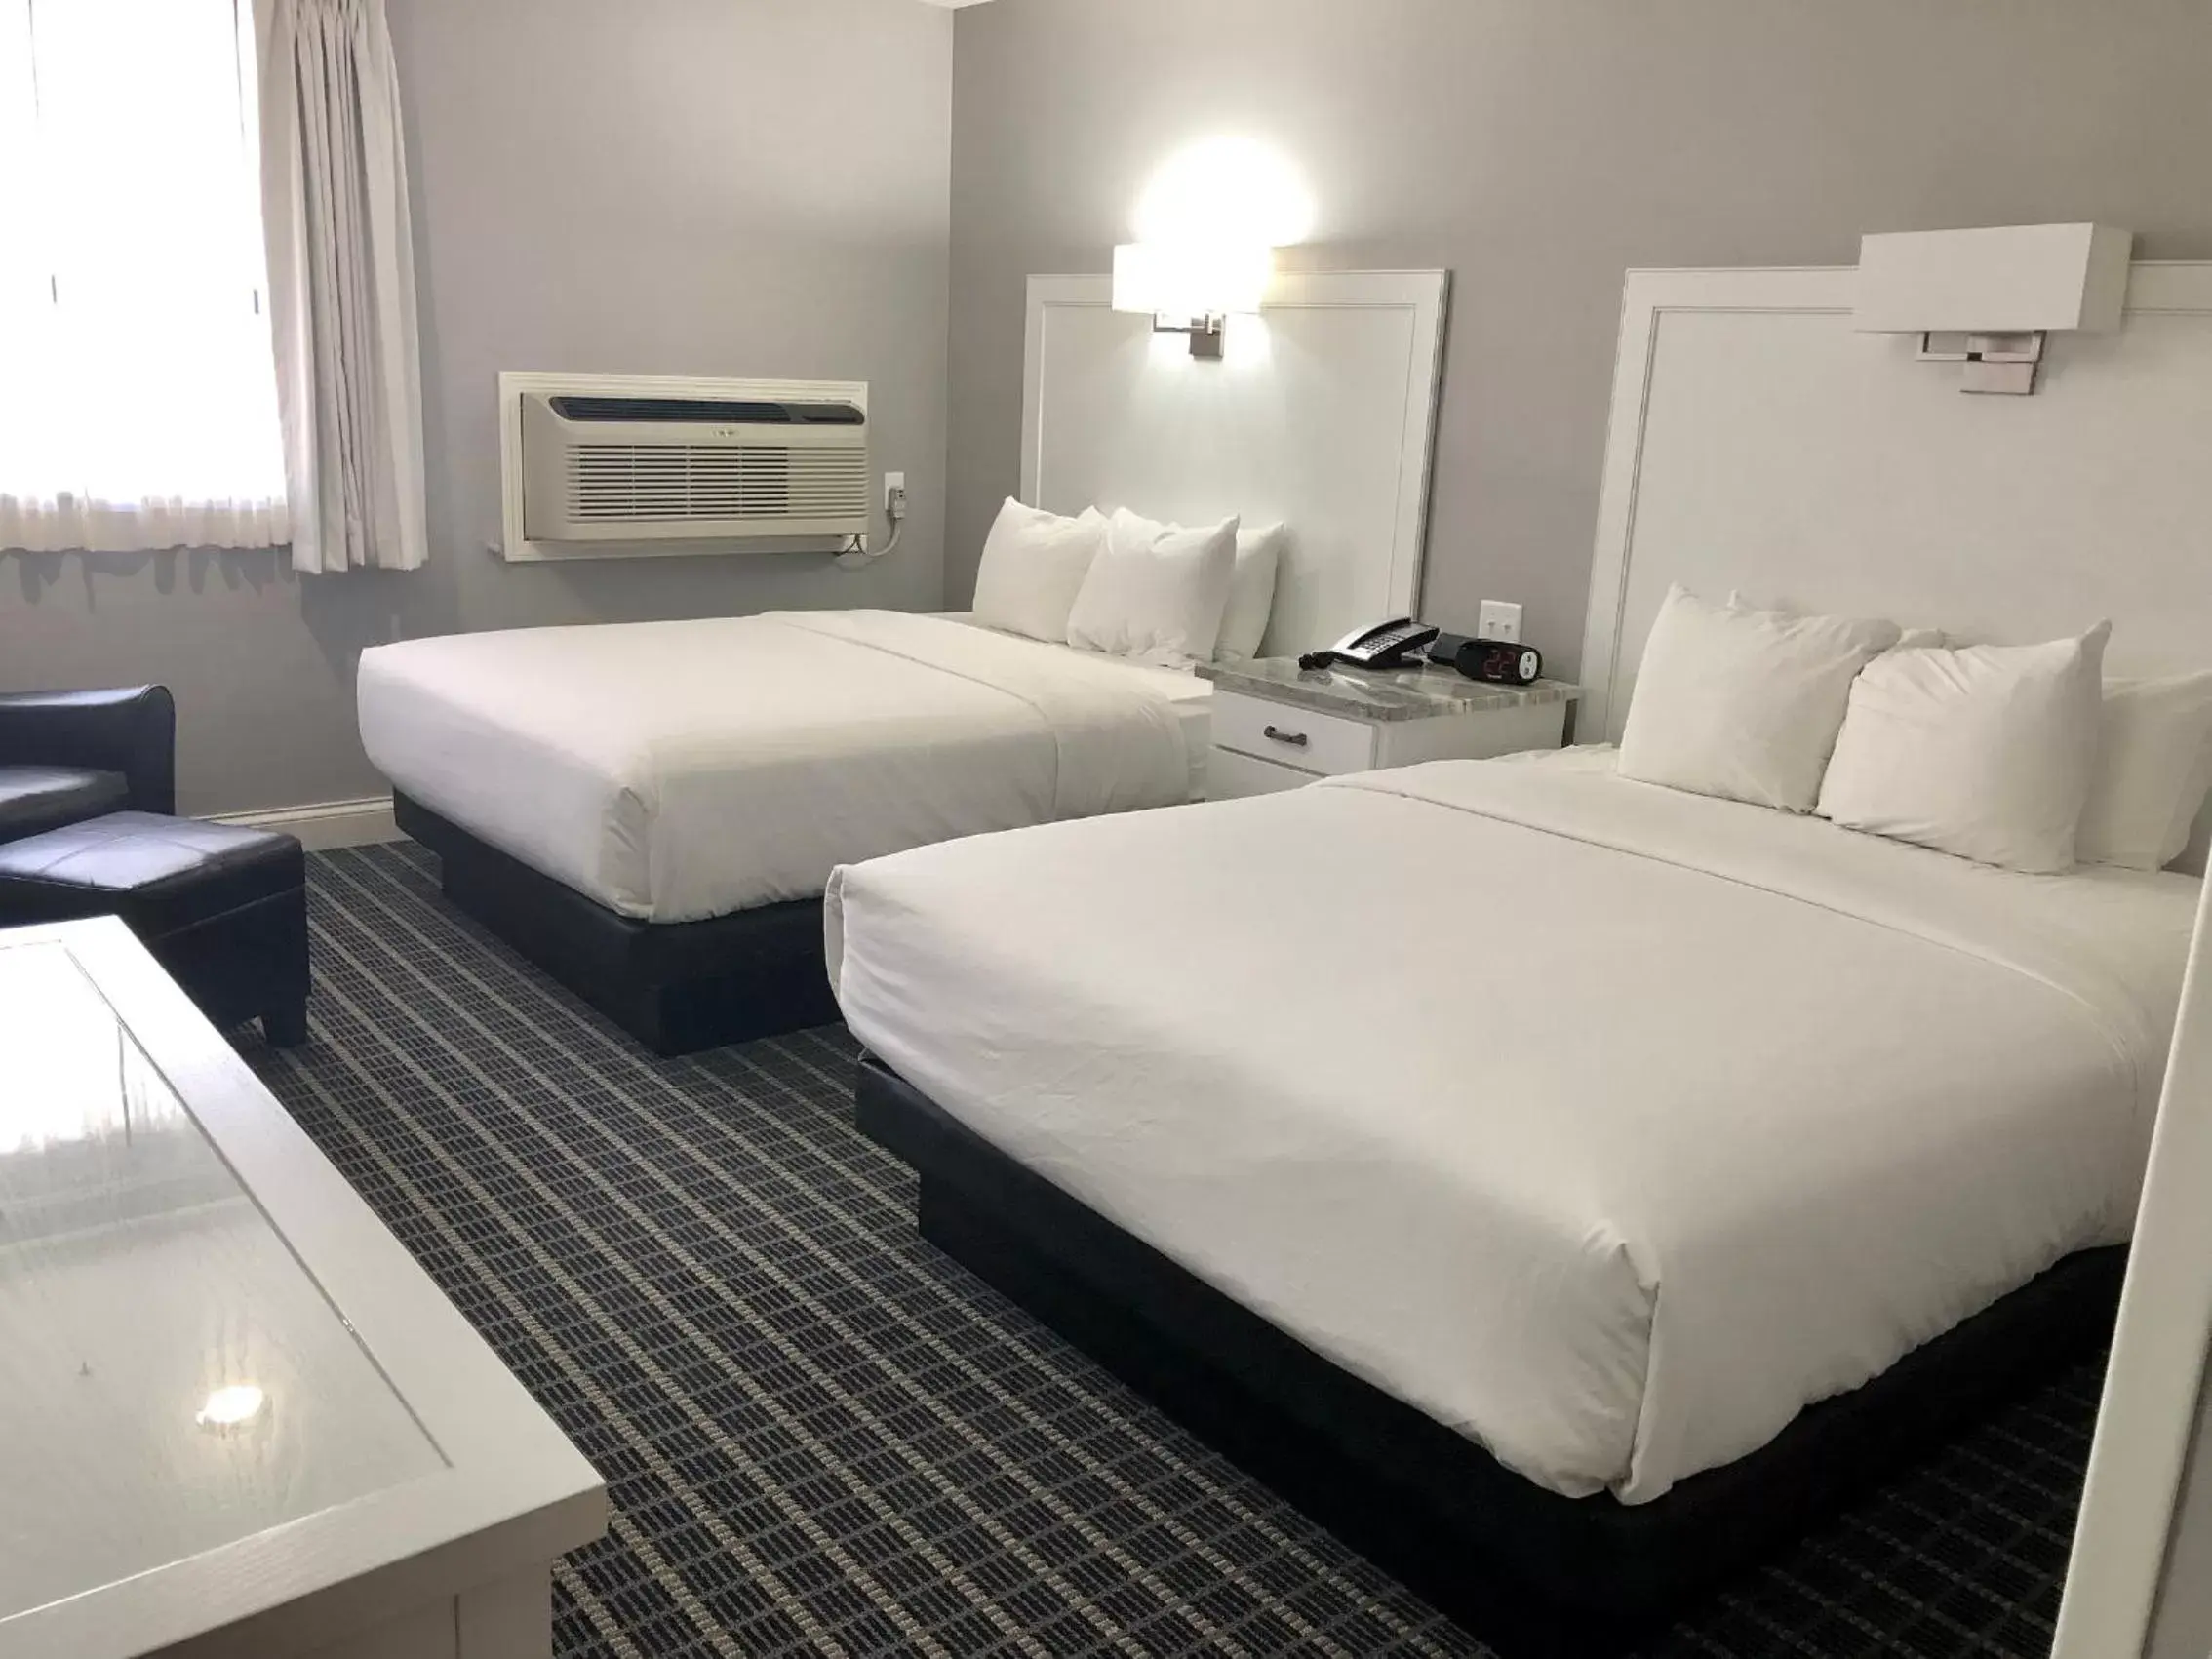 Bed in Berlin Resort